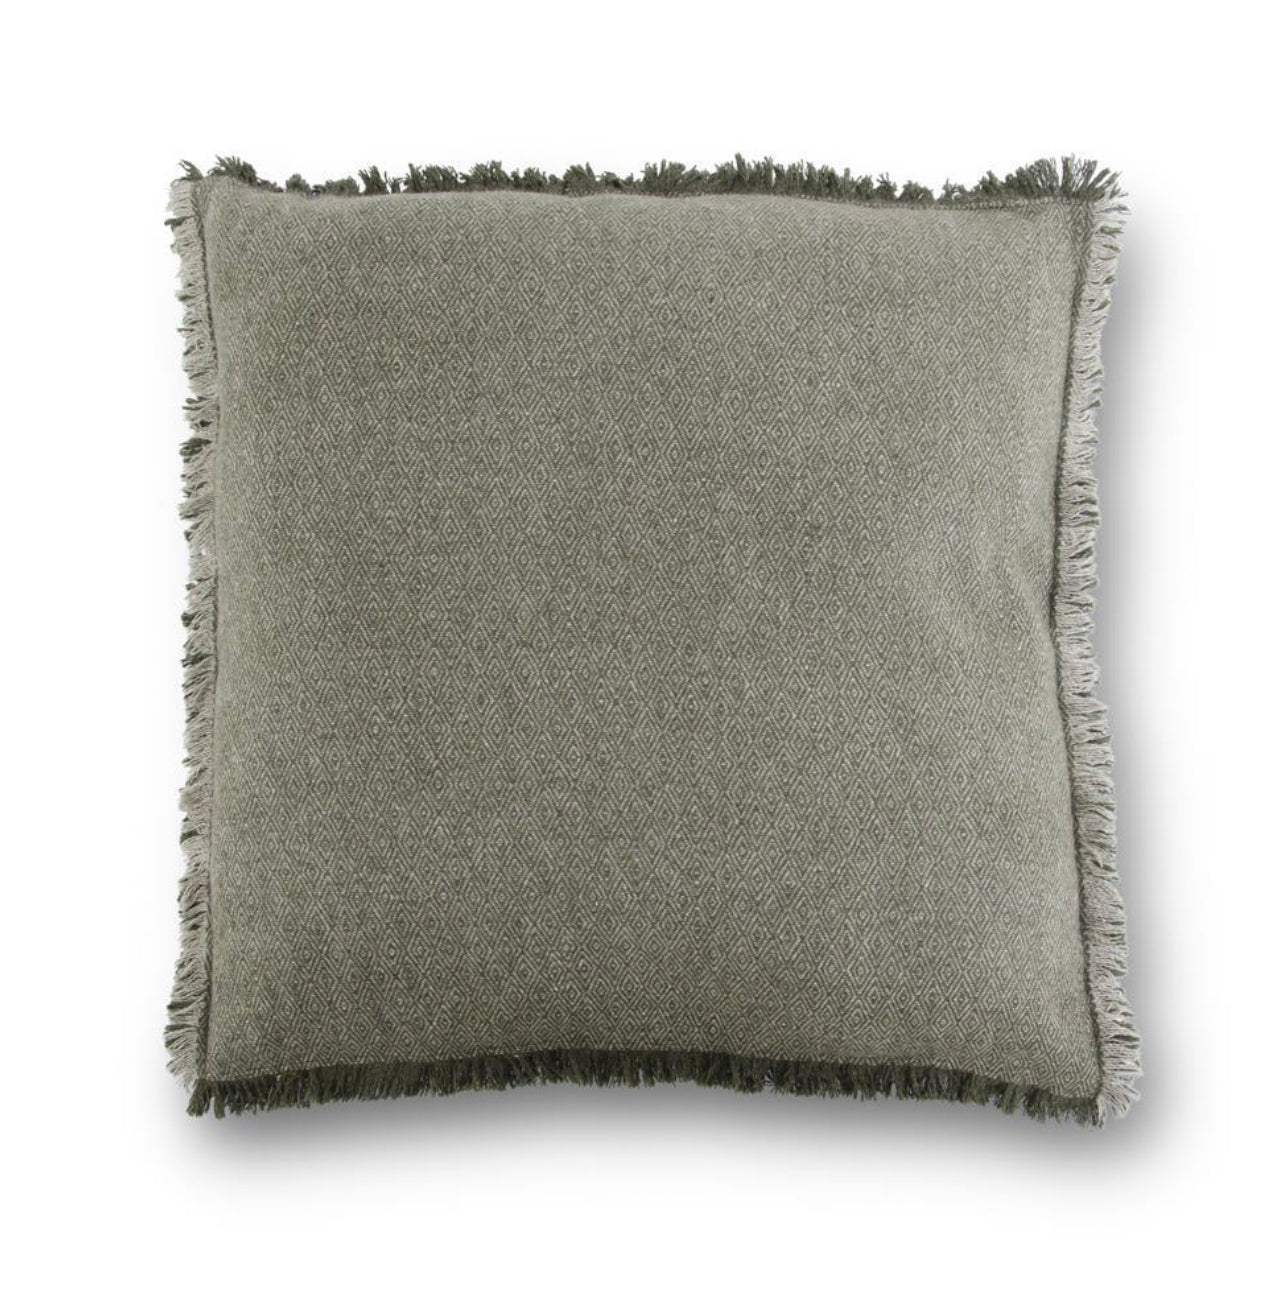 Green & Tan Diamond Pattern Wool Blend Square Pillow